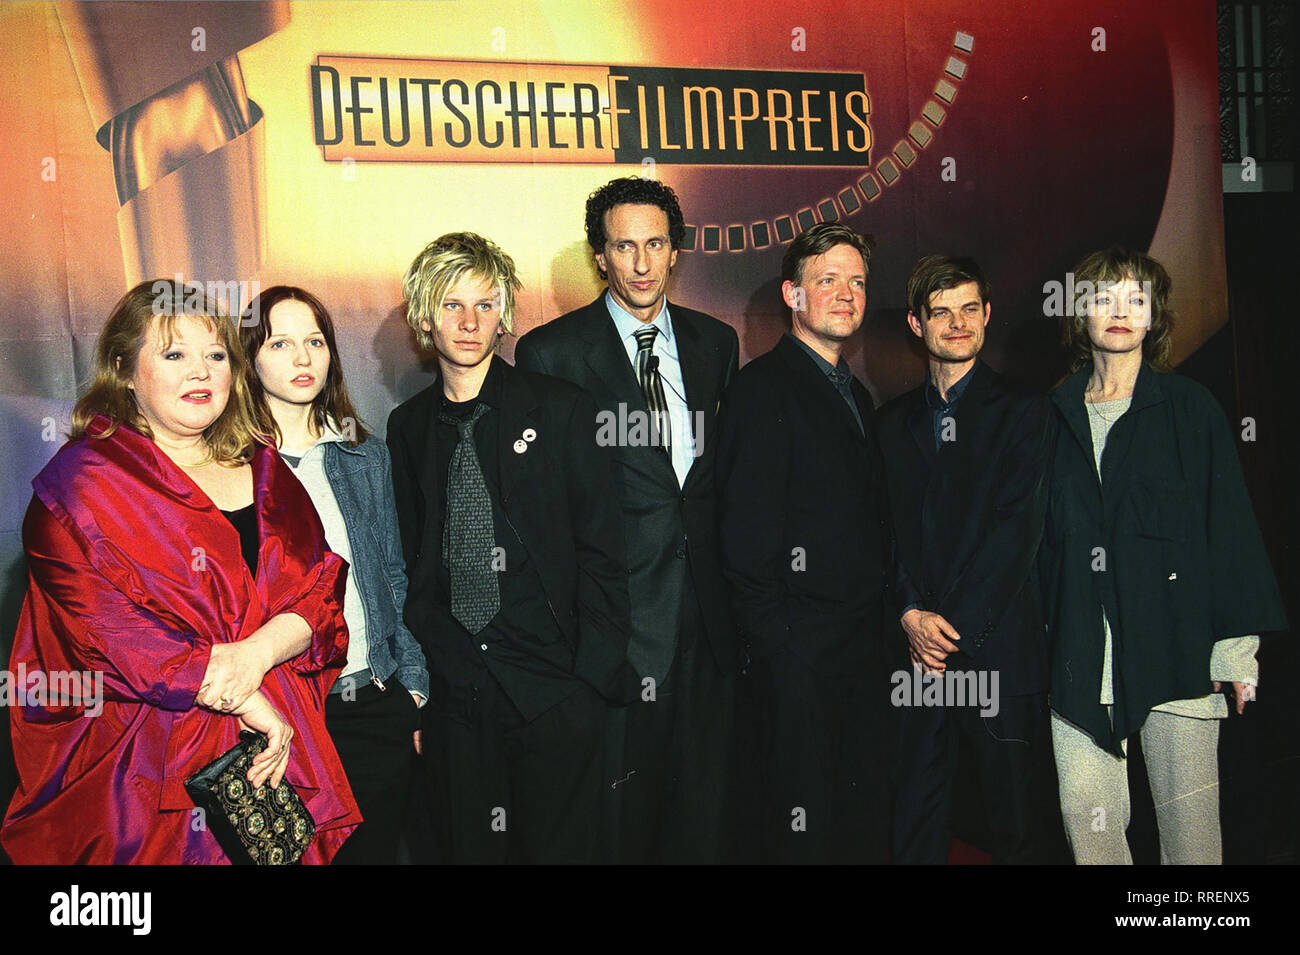 DEUTSCHER FILMPREIS 2001- Am 22. Juni wird in der Deutschen Staatsoper de Berlin zum 51. Mal der Deutsche Filmpreis' vergeben. Dann werden die Sieger der sieben bereits nominierten Kategorien gekürt. Fotov.l.n.r.:FRANZISKA TROEGNER nominiert als beste Nebendarstellerin 'Heidi M.', ANTJE WESTERMANN - beste Nebendarstellerin 'Gran Paradiso', ROBERT STADLOBER - bester Hauptdarsteller 'Crazy', JULIAN NIDA-RÜMLIN, Justus von DOHNANYI - bester Nebendarsteller 'Das Experiment', LARS RUDOLPH - bester Nebendarsteller "der Krieger und die Kaiserin", KATRIN SASS - beste Hauptdarstellerin 'Heidi M.' / Üb Banque D'Images